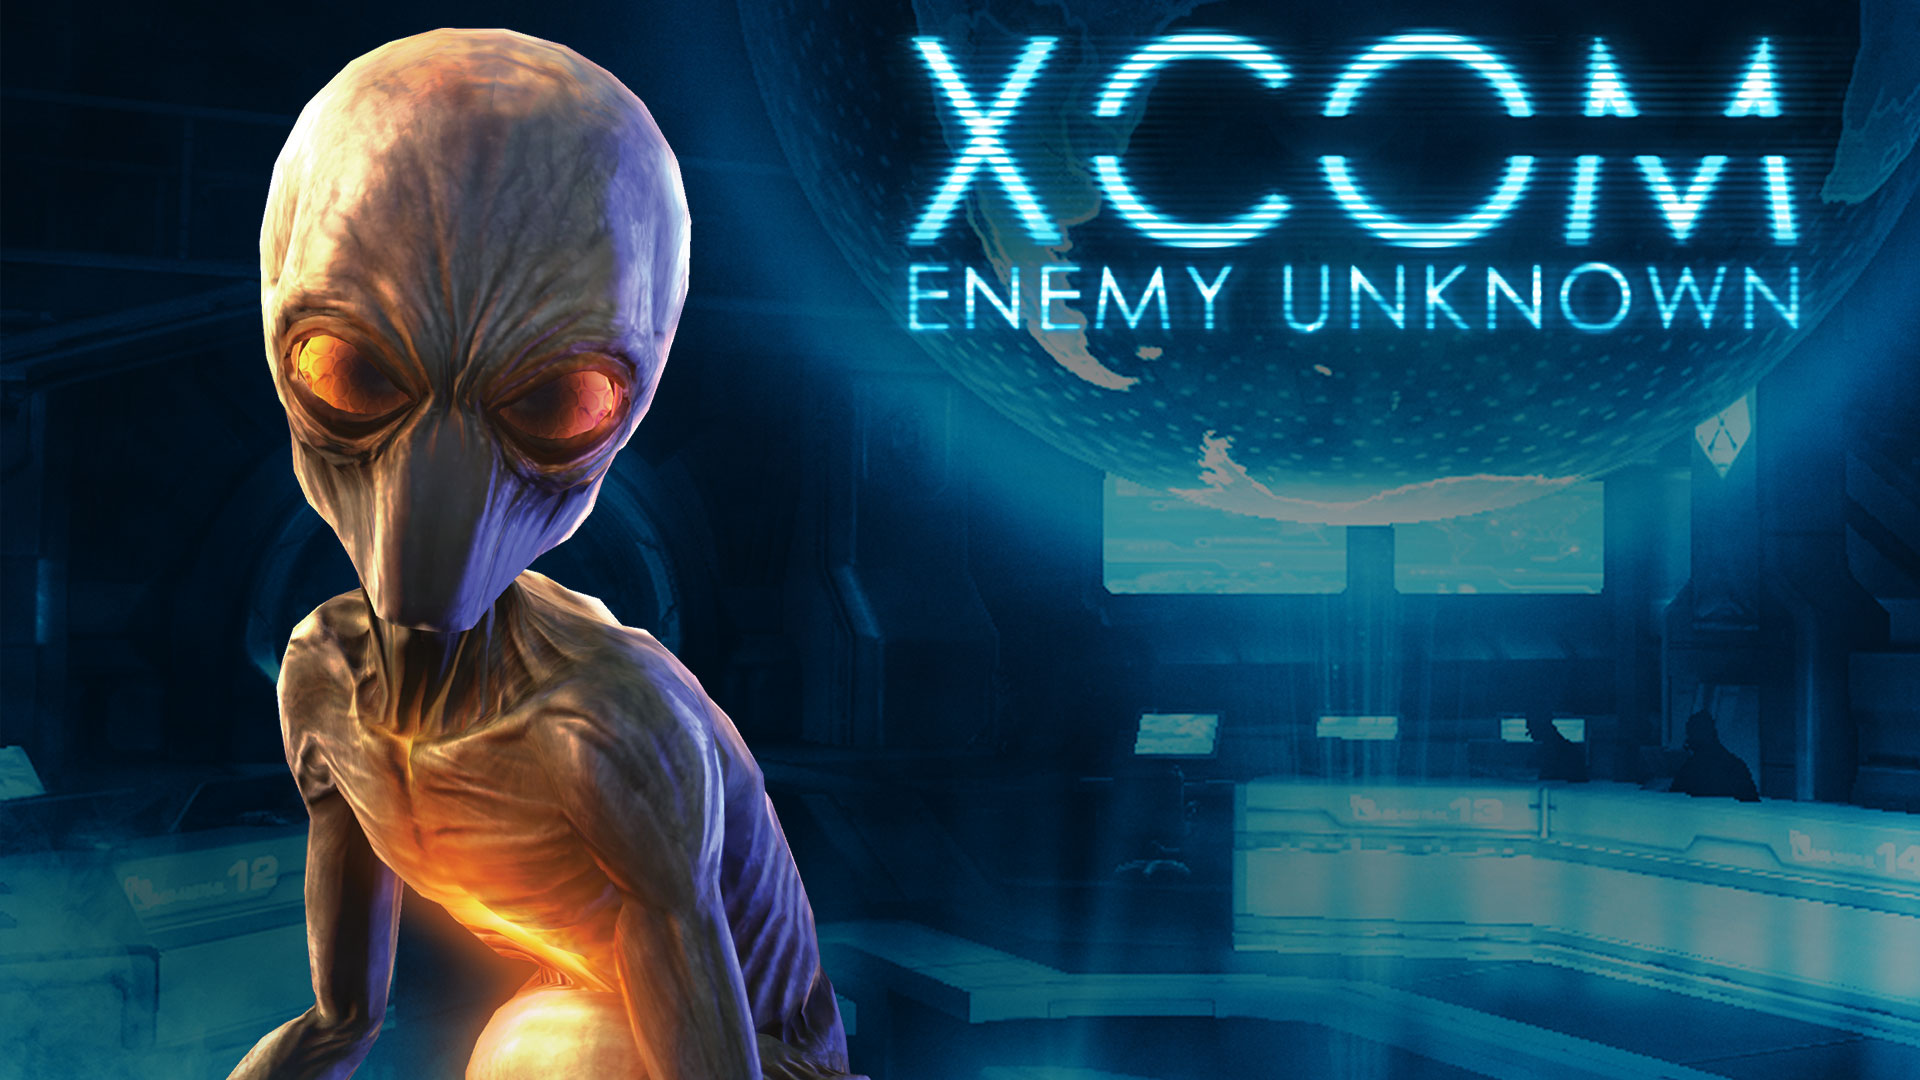 XCOM: Enemy Unknown #22